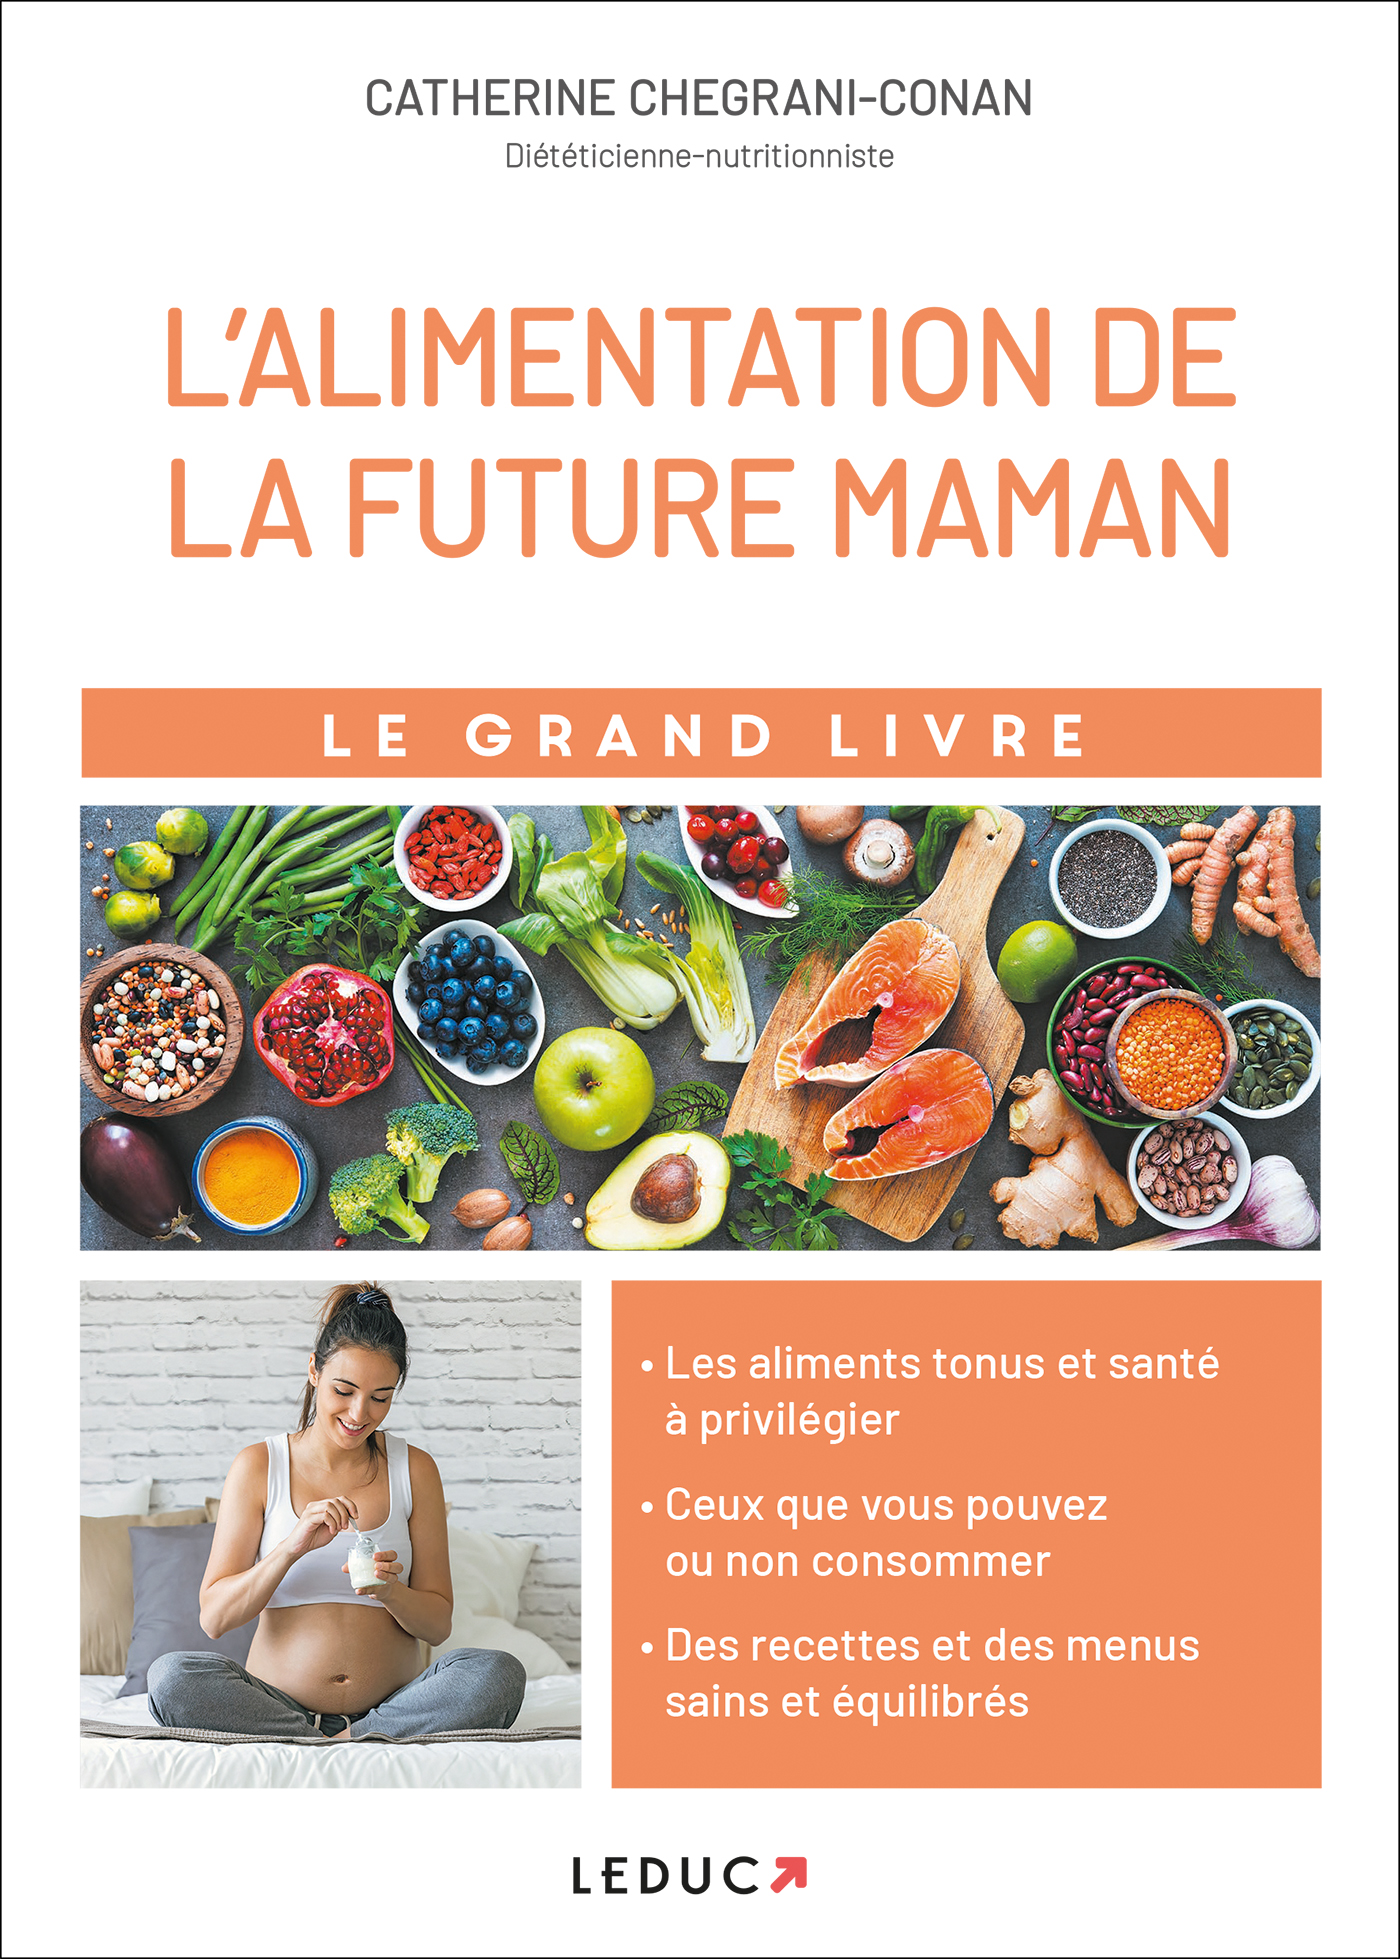 Le grand livre de l'alimentation de la future maman - Les aliments tonus et  santé à privilégier ; des recettes et des menus sains et équilibrés -  Catherine Chegrani-Conan (EAN13 : 9791028512651)